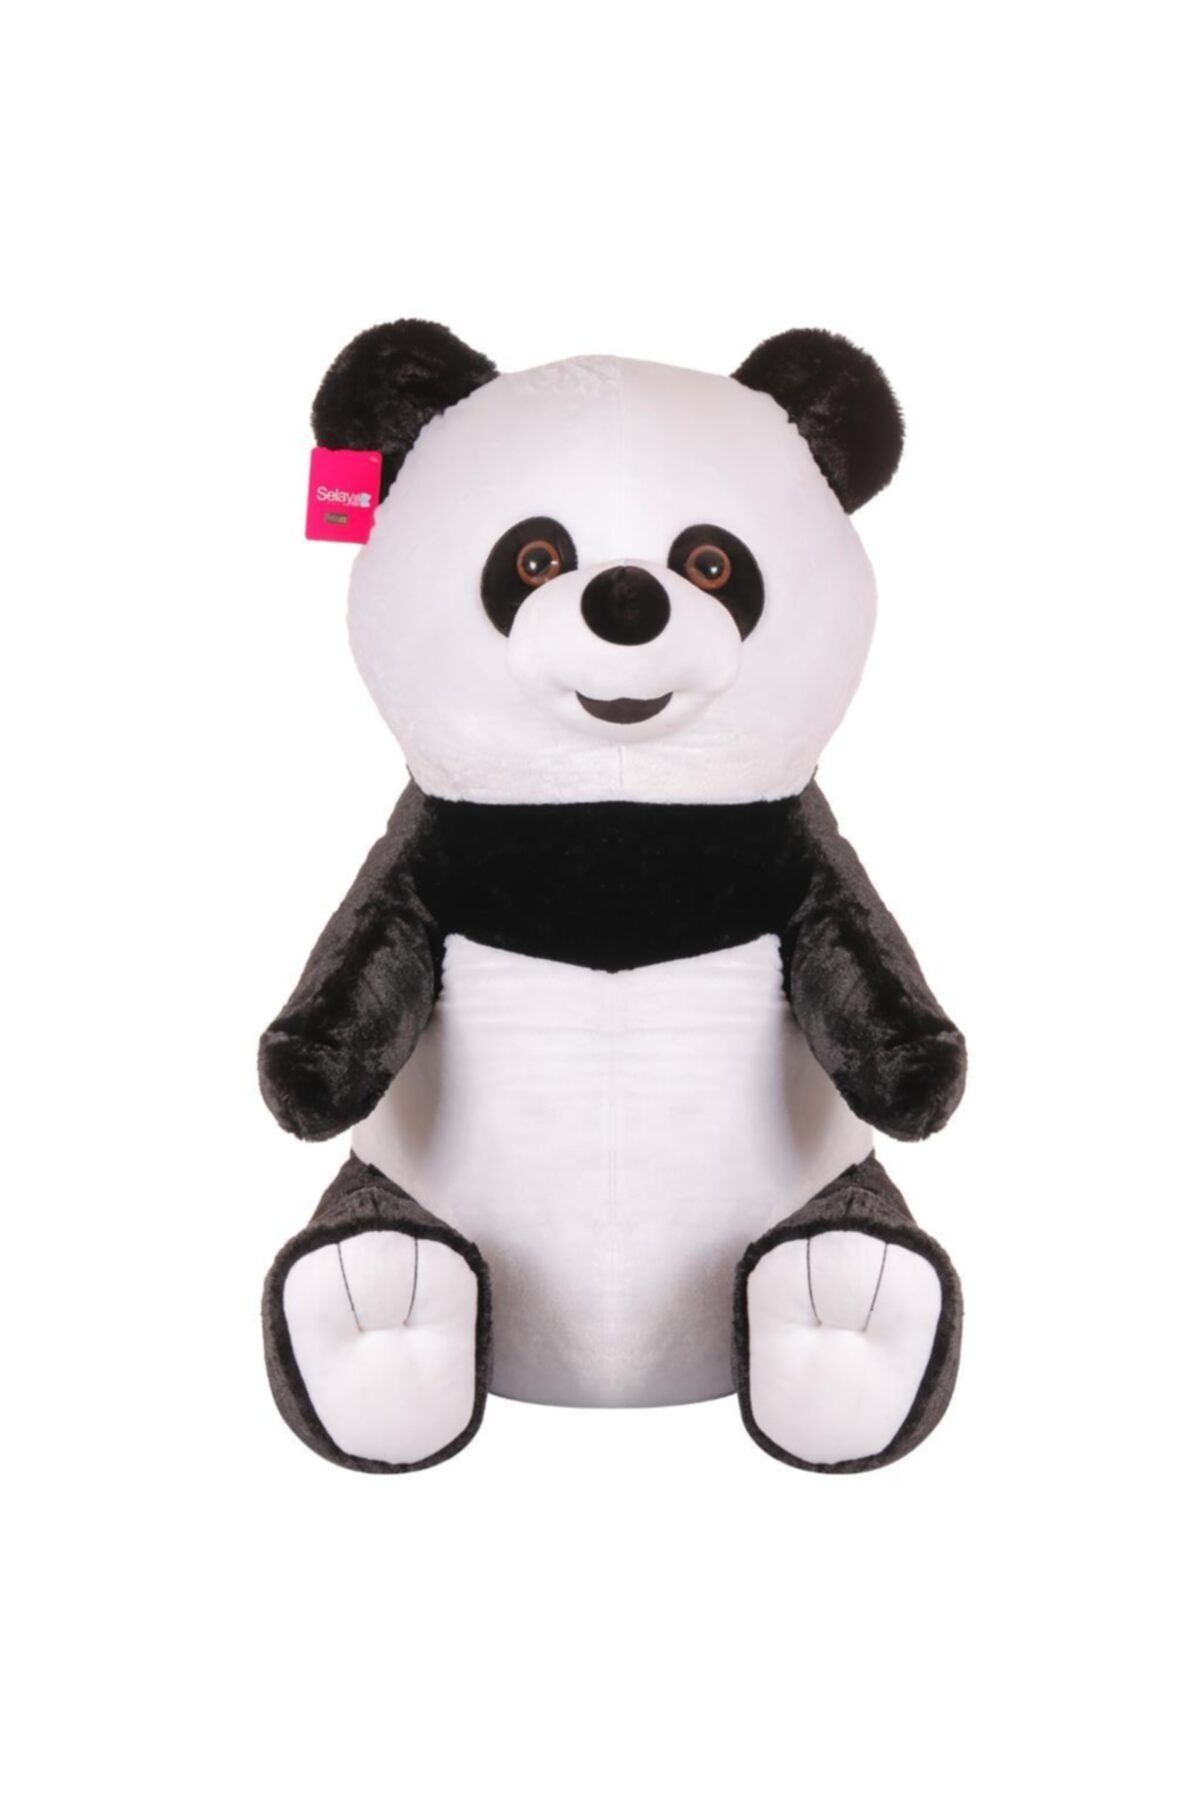 SELAY TOYS Büyük Boy Peluş Panda Oyuncak 96 Cm 5119